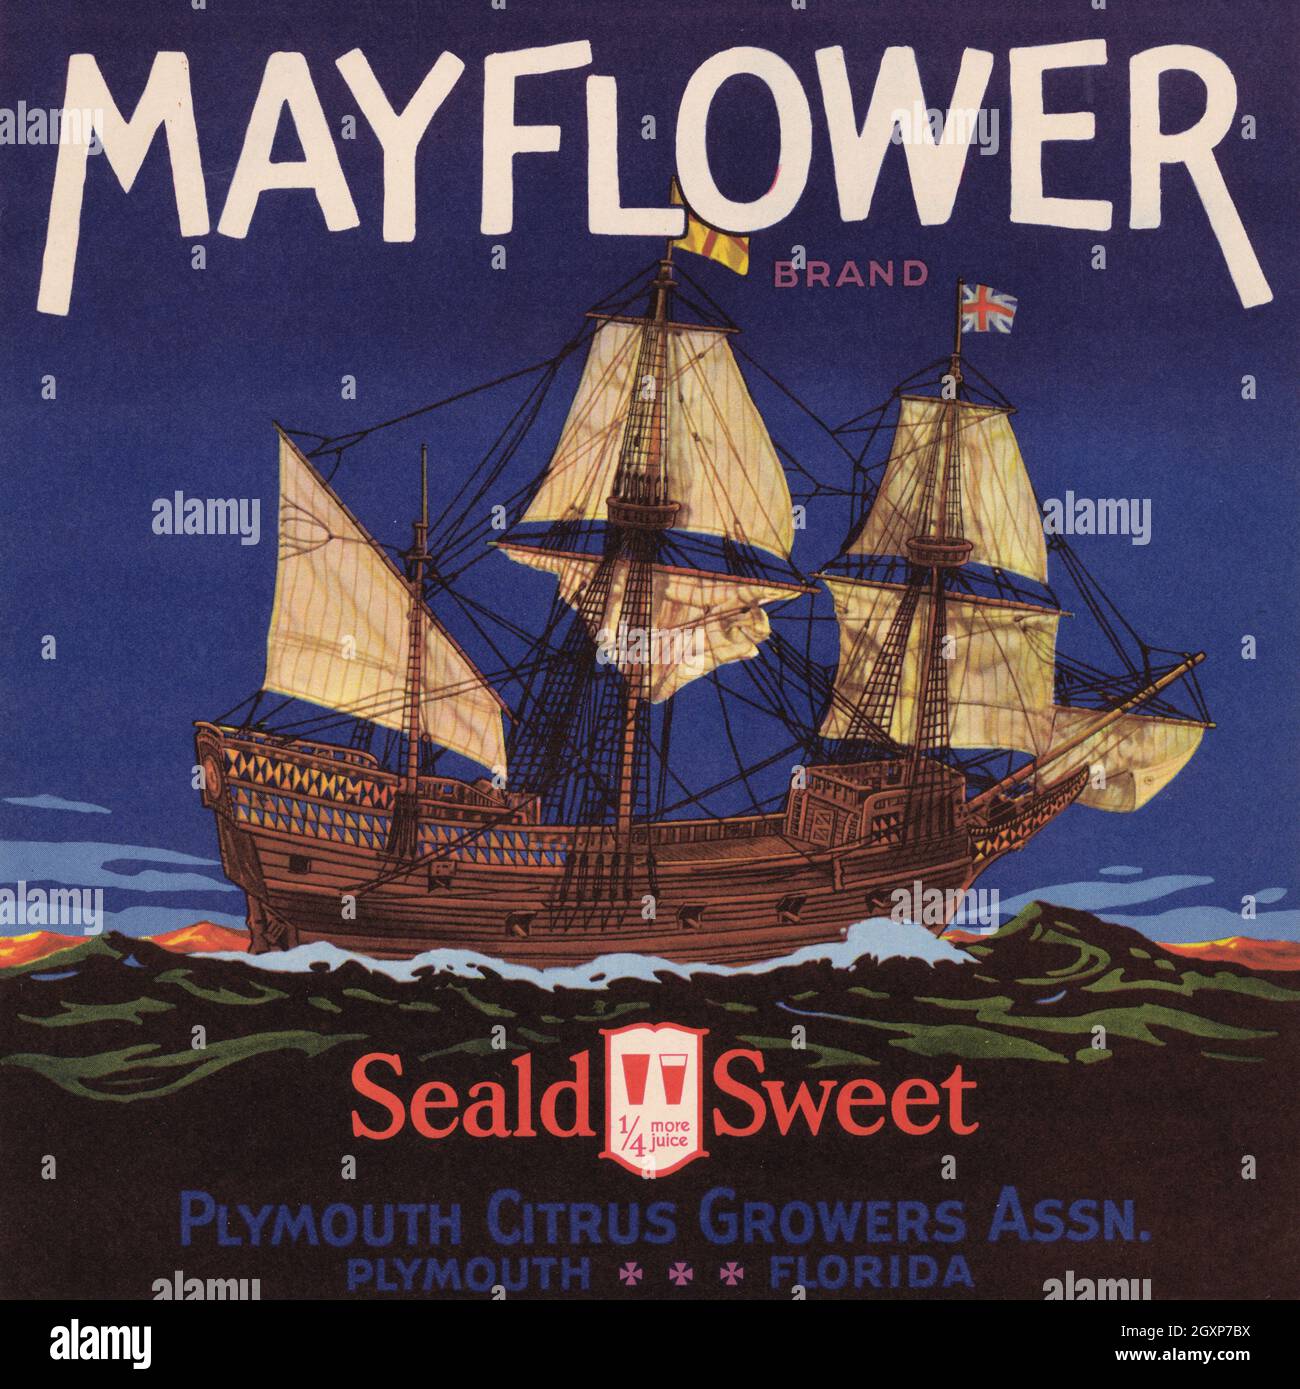 Mayflower Brand Stockfoto